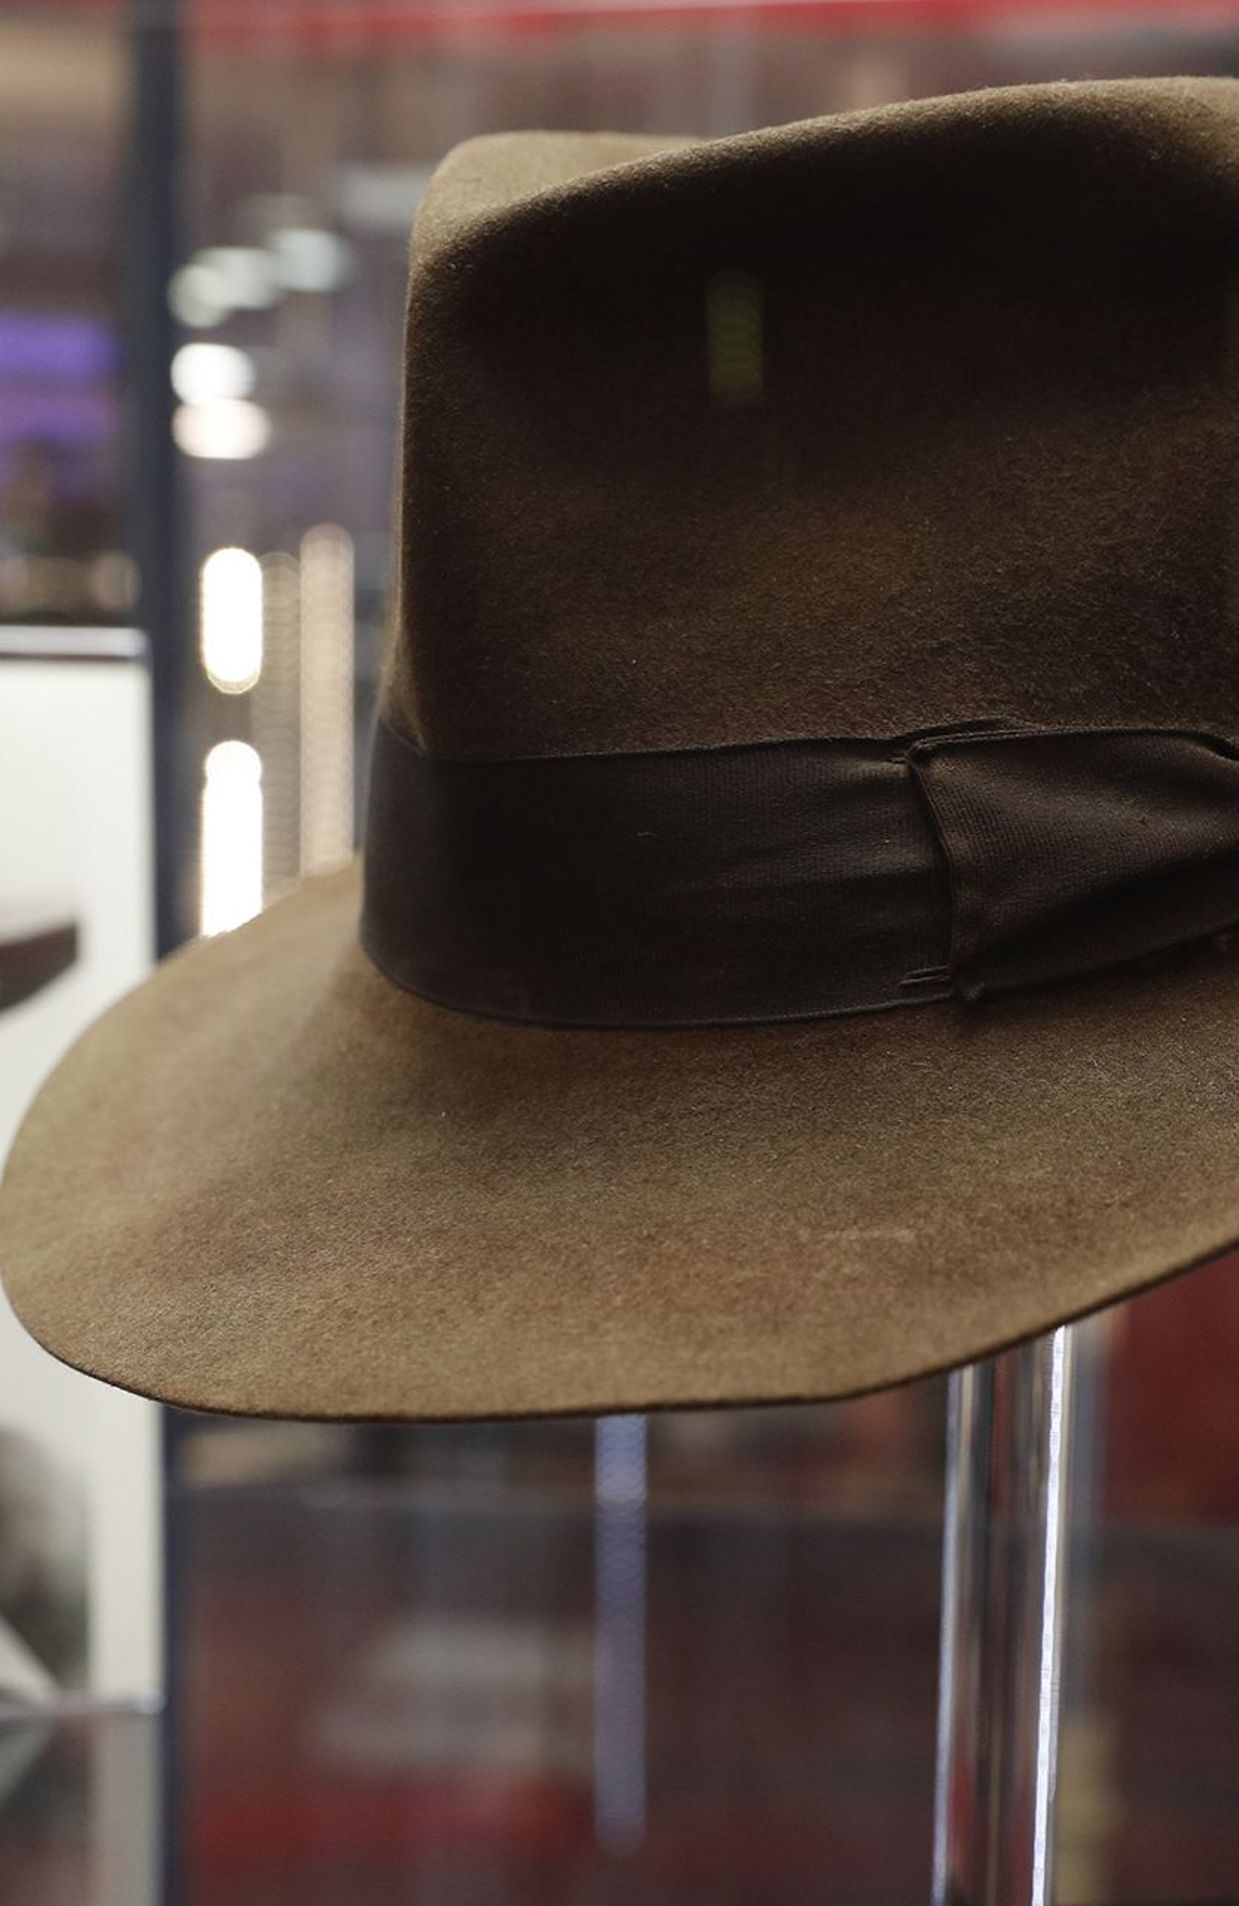 Le chapeau d'Indiana Jones adjugé près de 450.000 euros aux